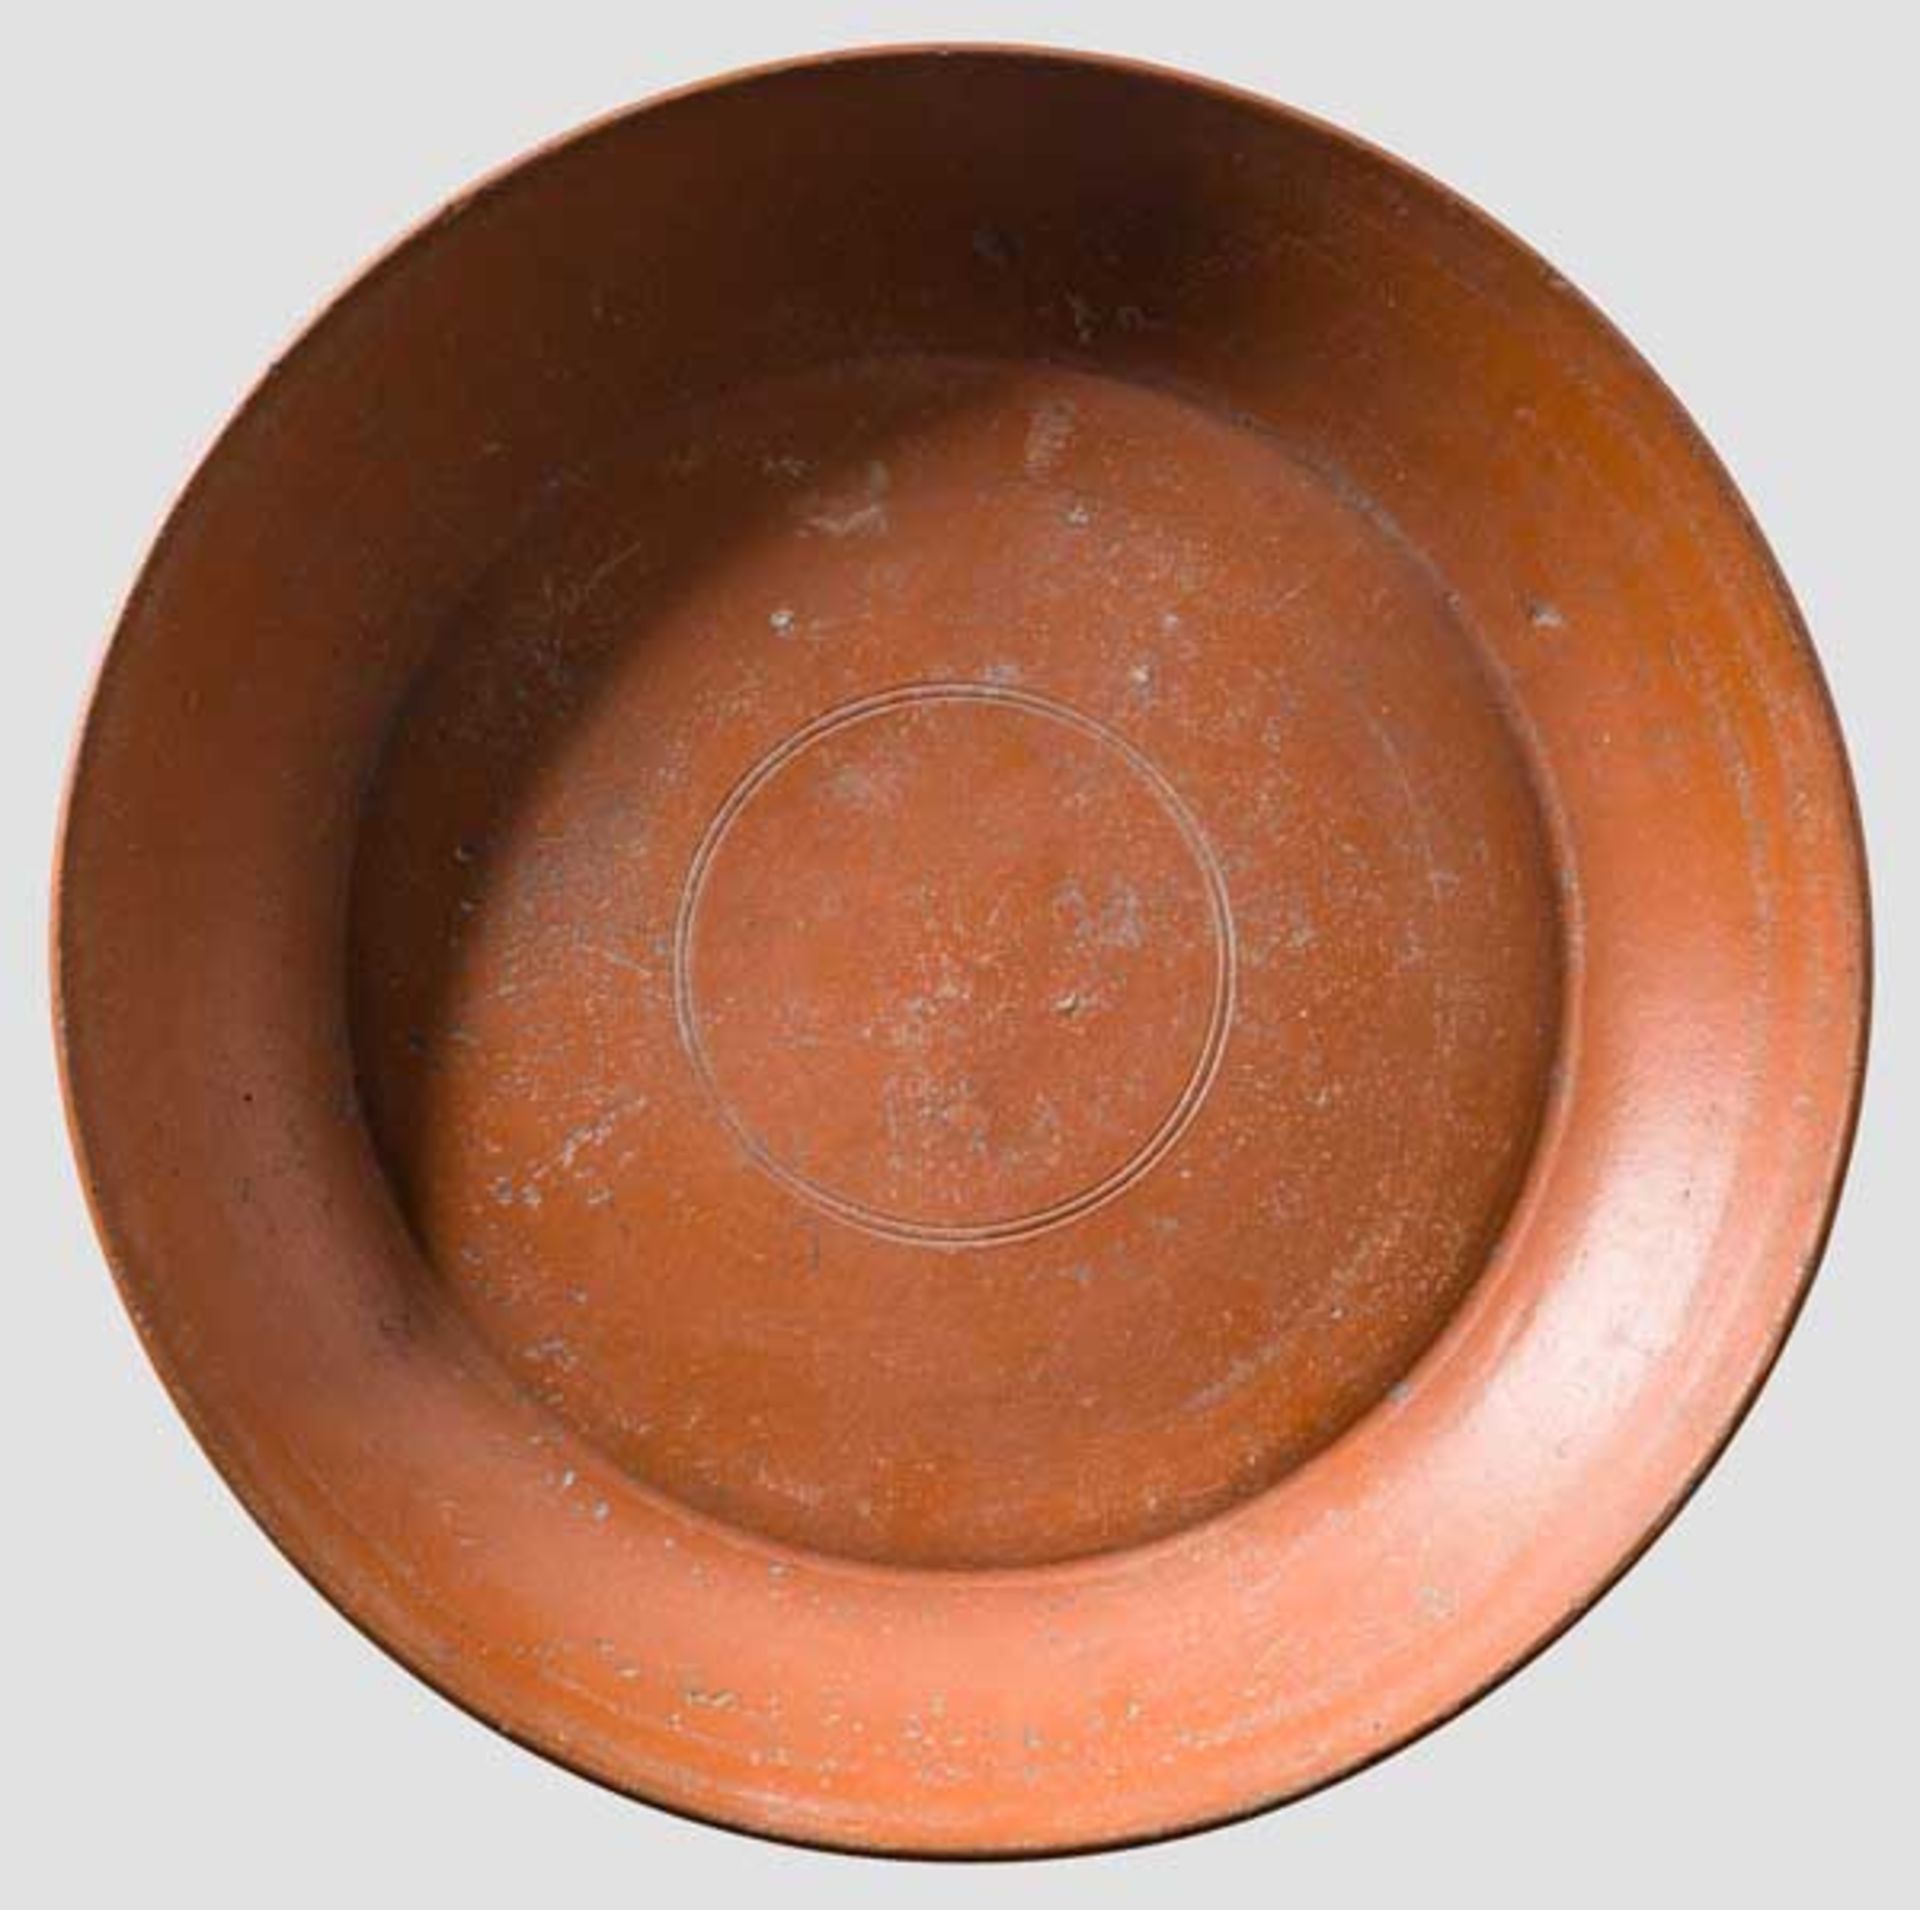 Teller, sigillata chiara C, 2. Hälfte 4. Jhdt. bis um 400 n. Chr. Teller mit rotem Glanztonüberzug